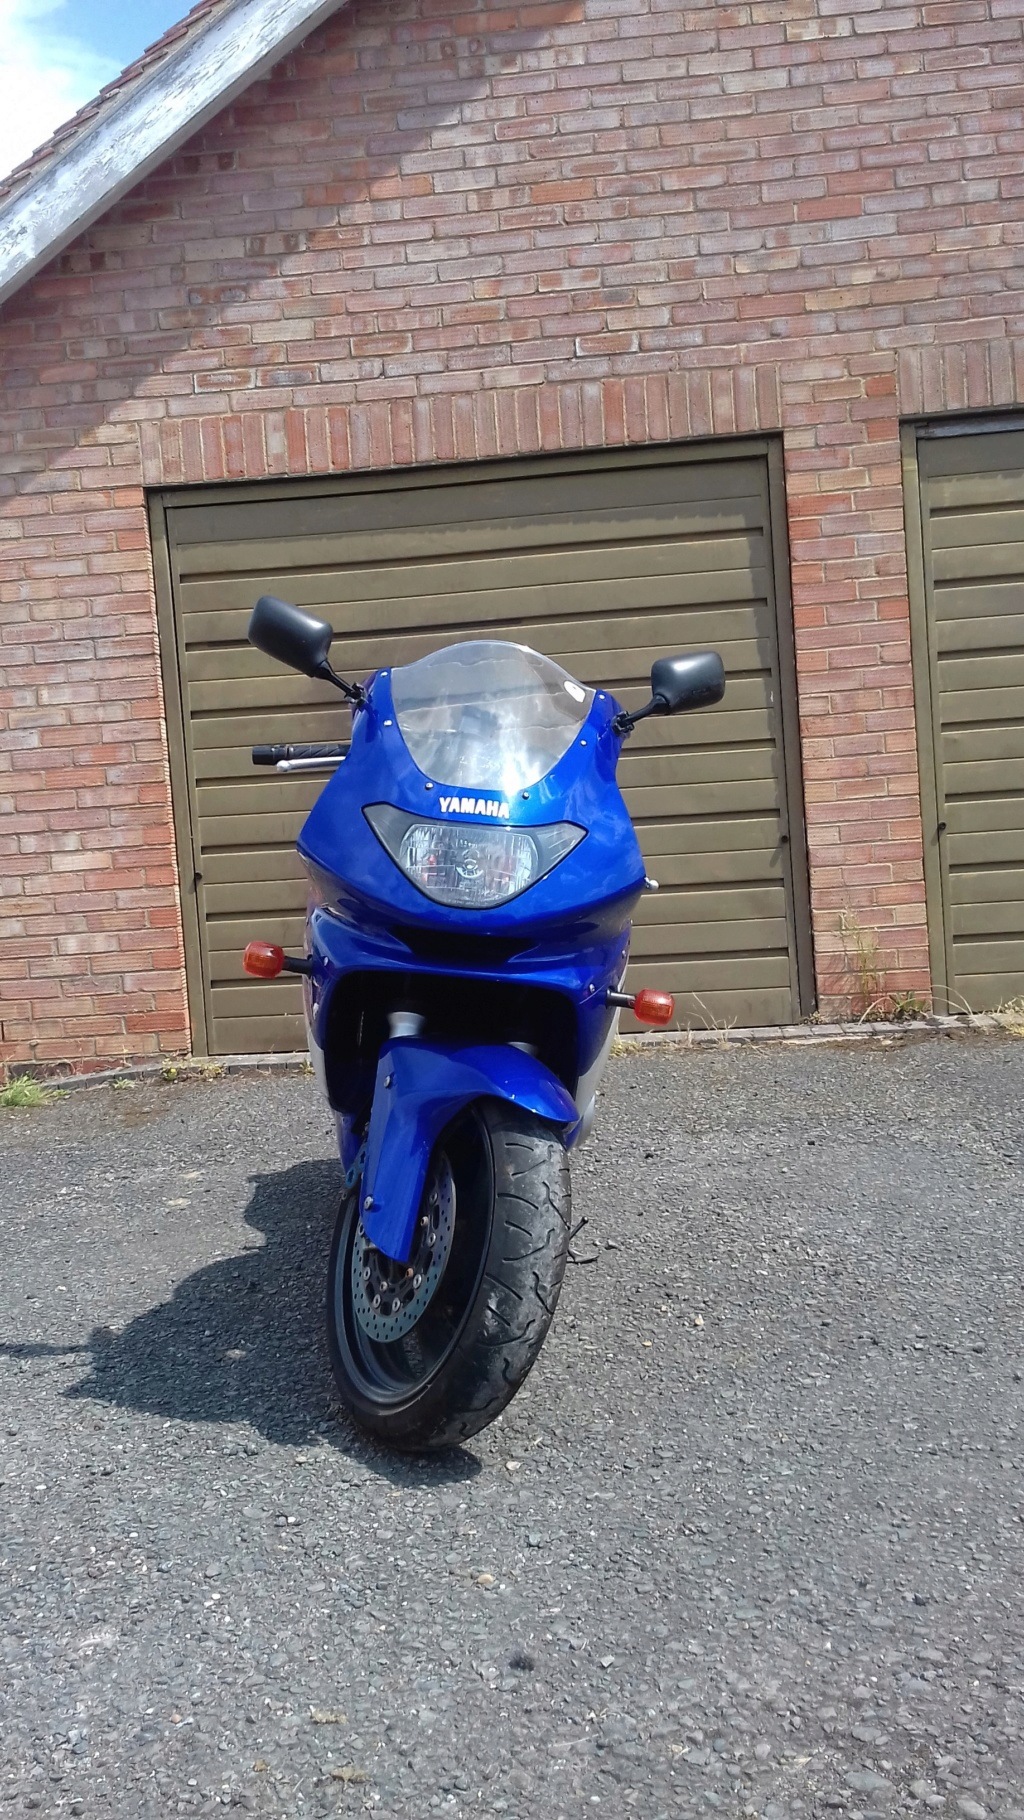 2003 Yamaha Thundercat (Blue and White) 42410